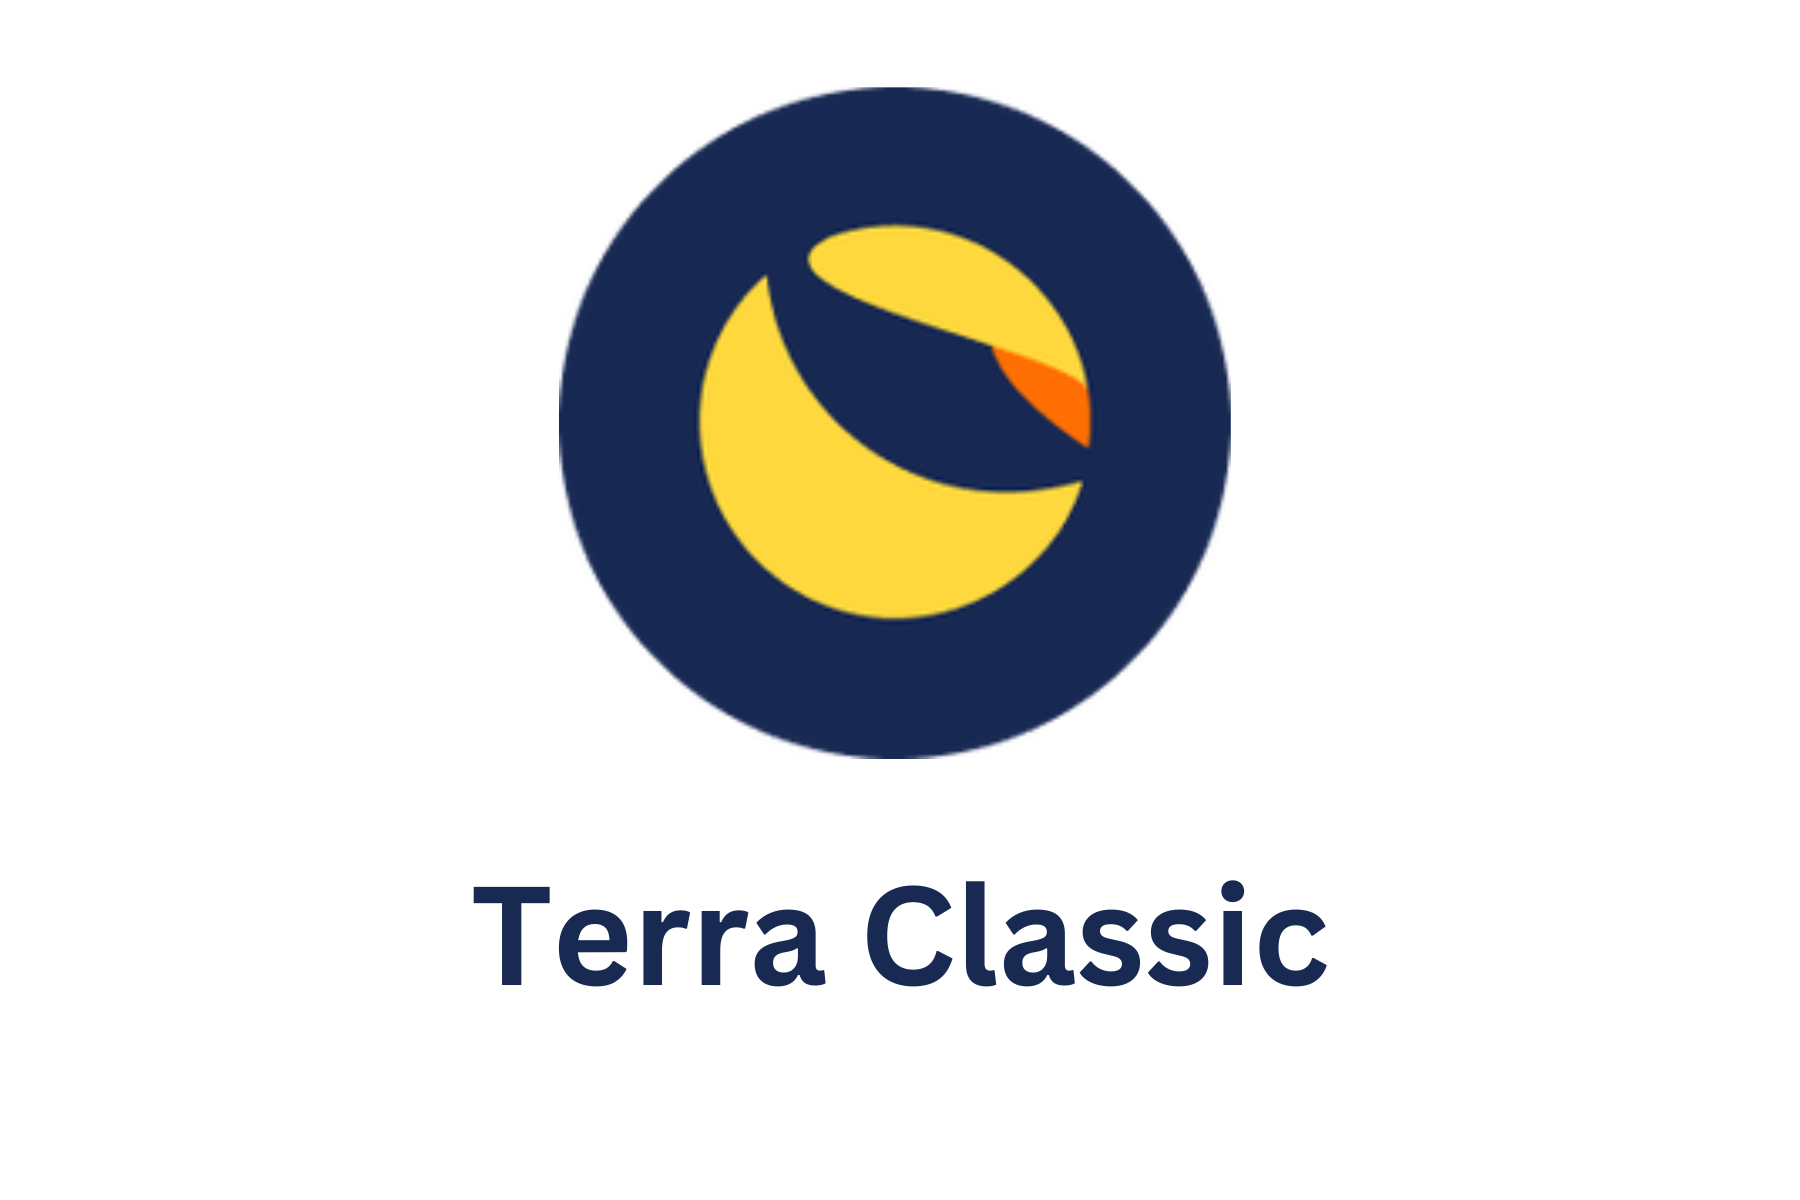 The logo of Terra Classic (LUNC)